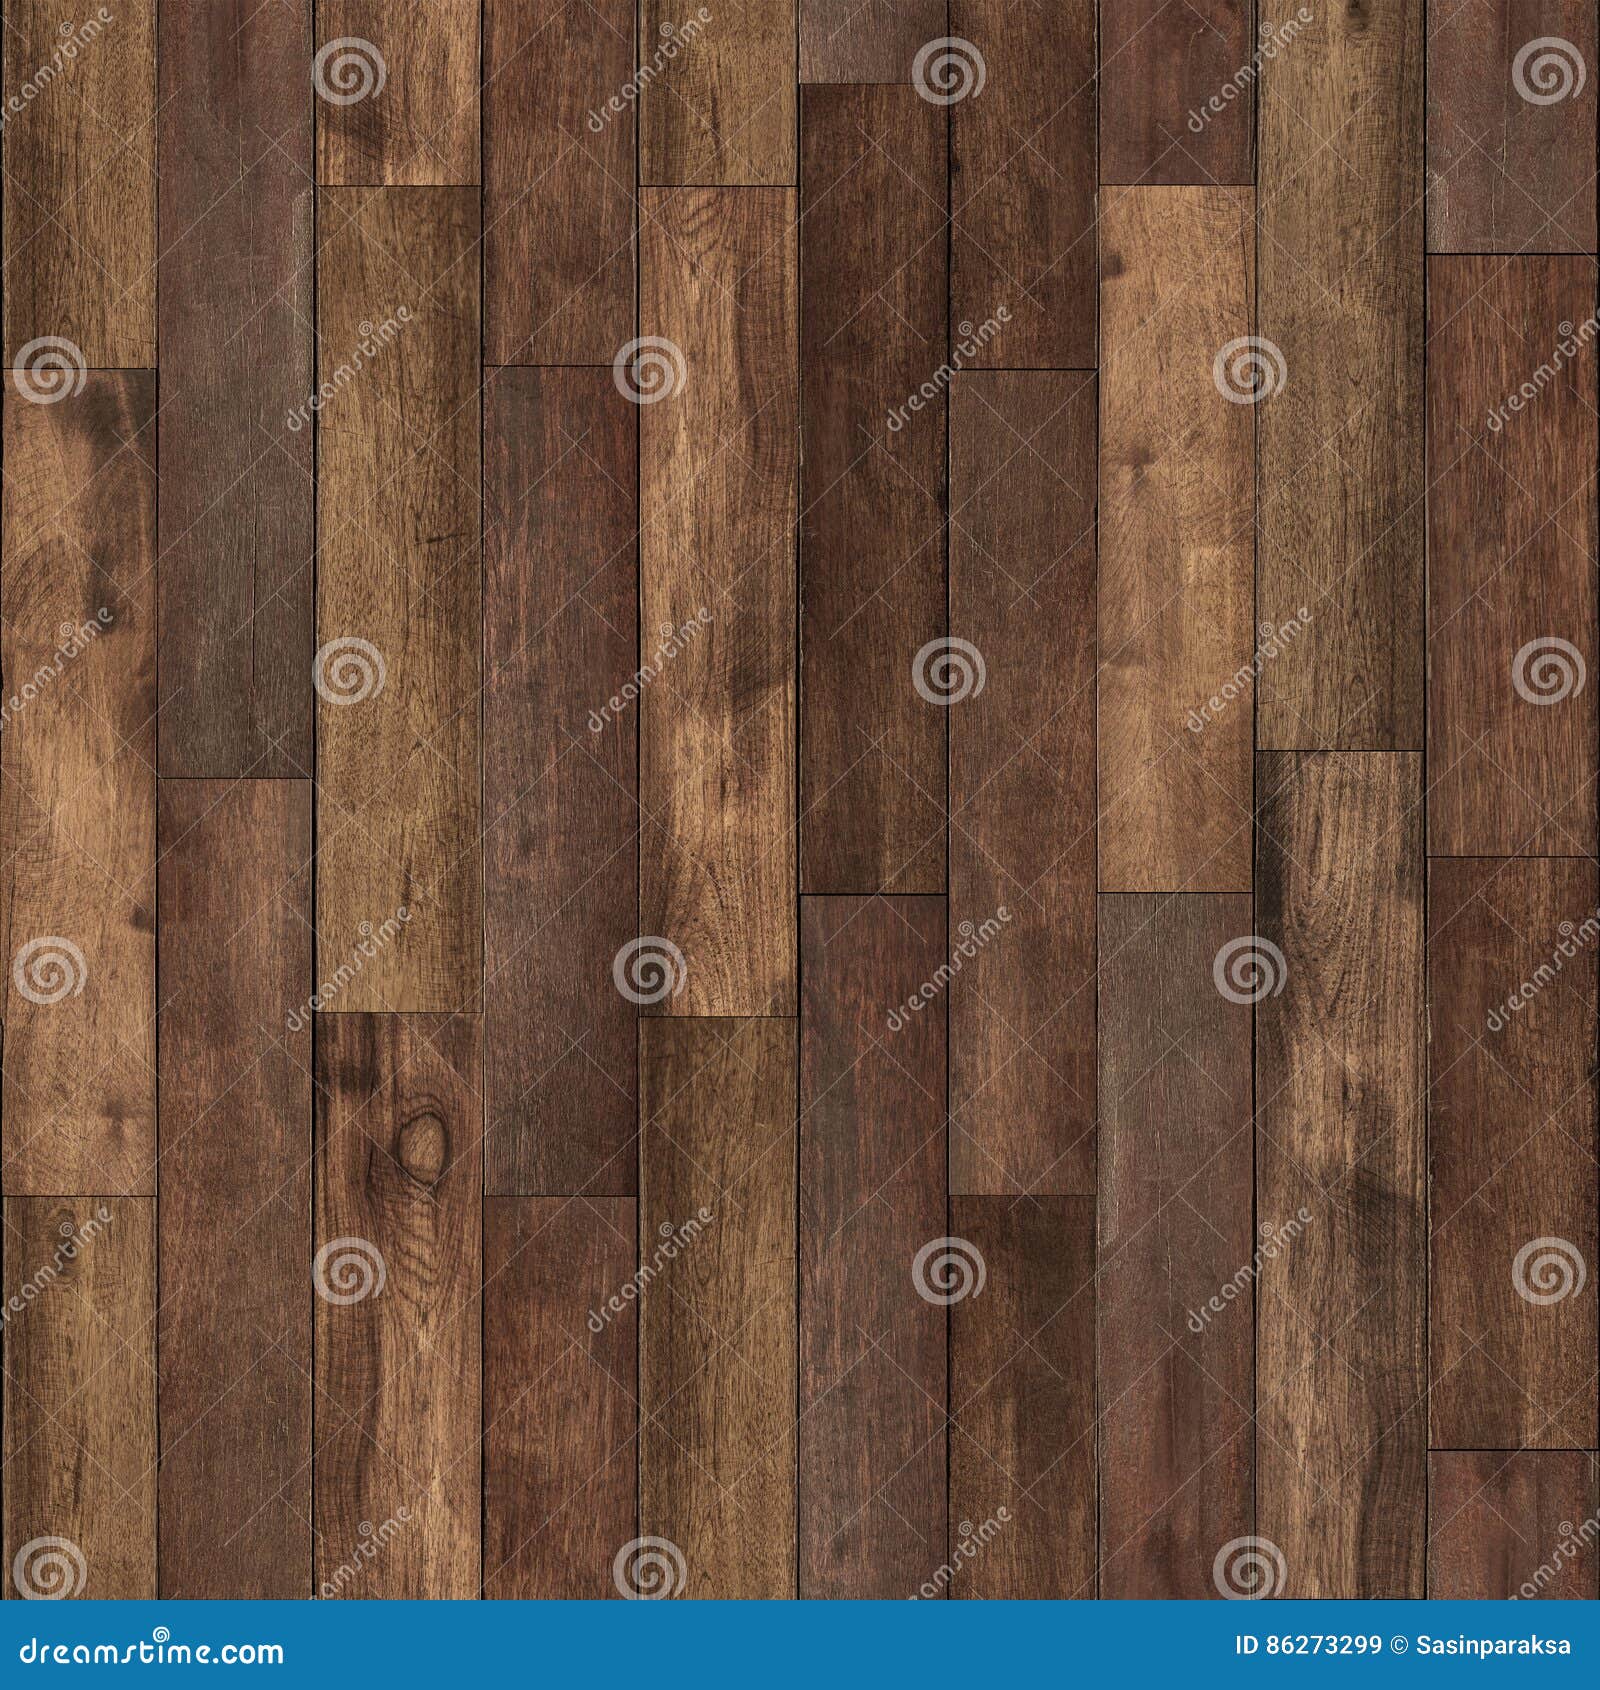 seamless wood floor texture